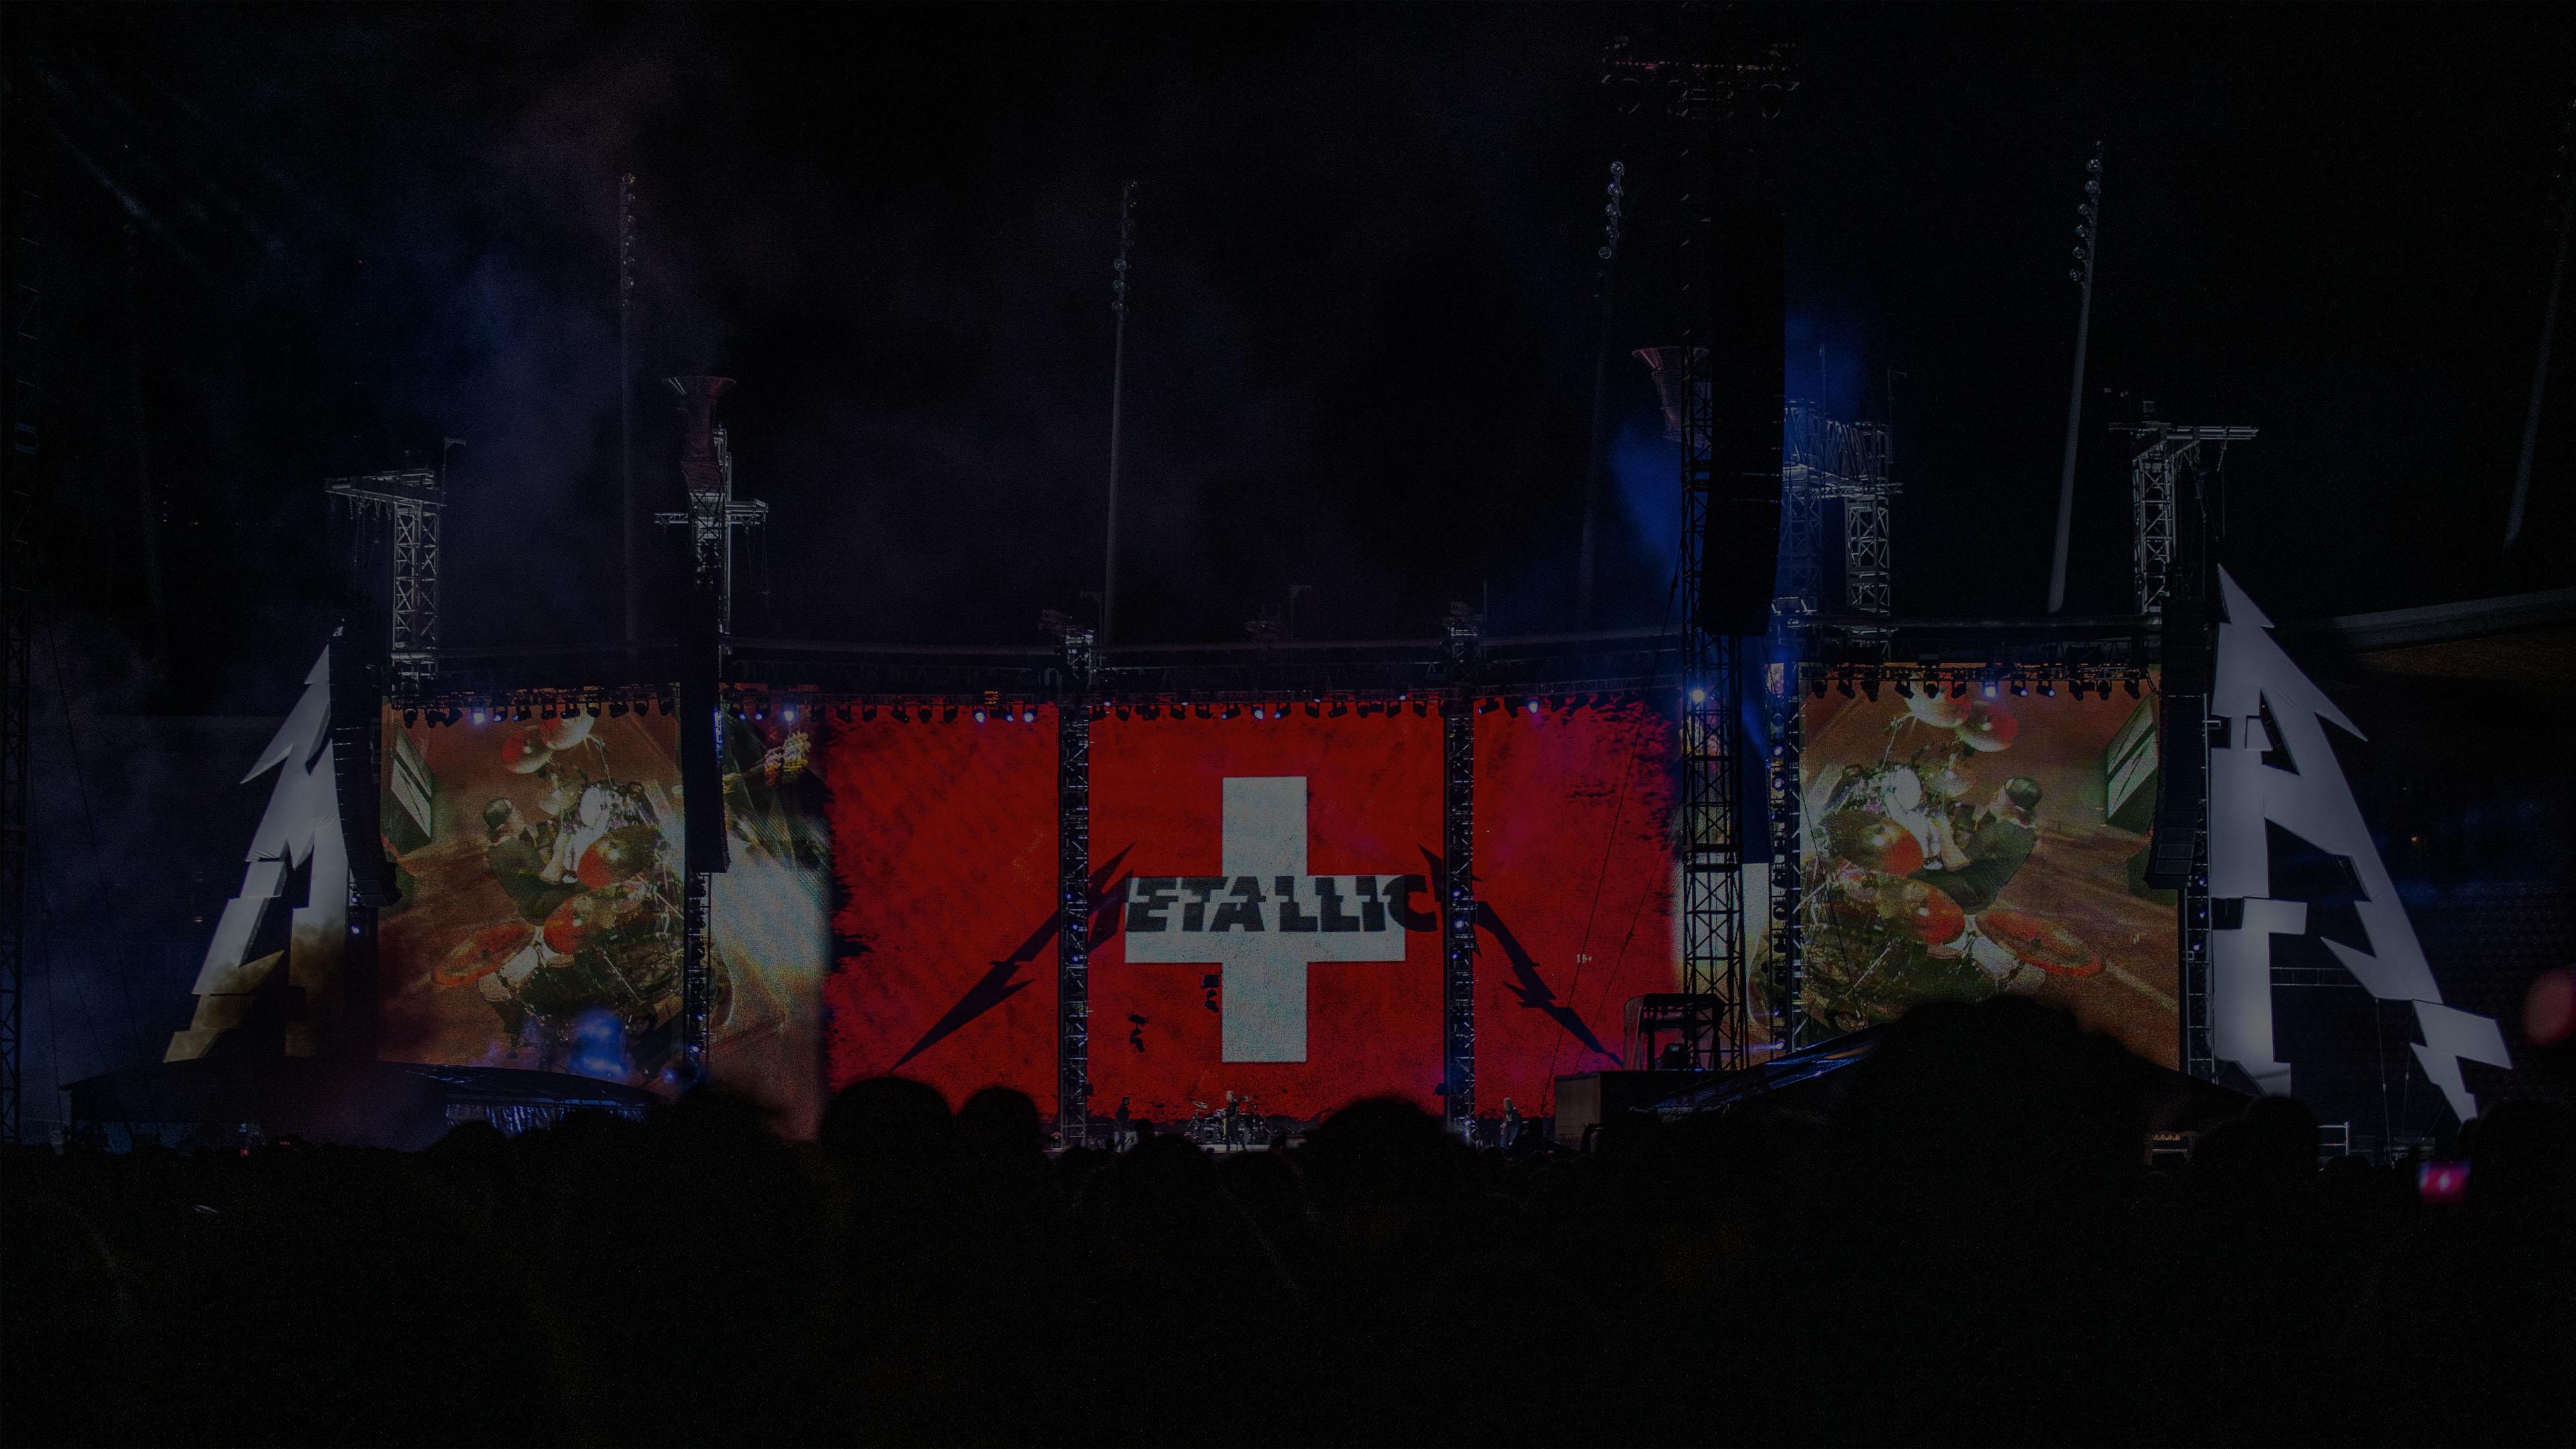 Metallica at Letzigrund Stadion in Zurich, Switzerland on May 10, 2019